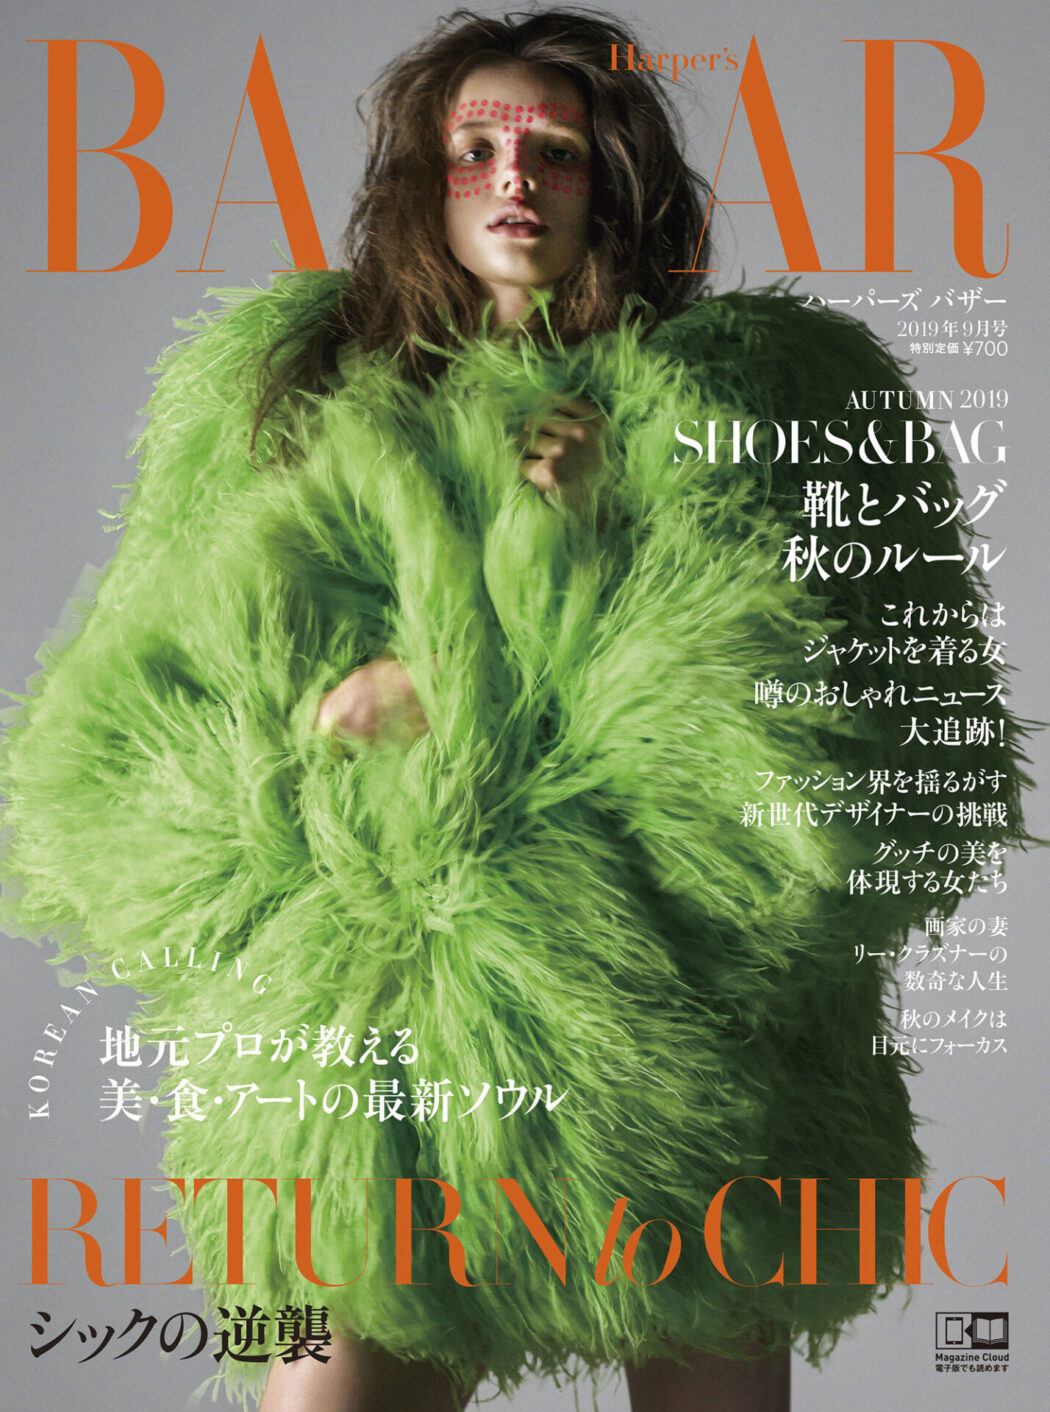 Photo by Masayuki Ichinose
Harper's BAZAAR September issue 2019